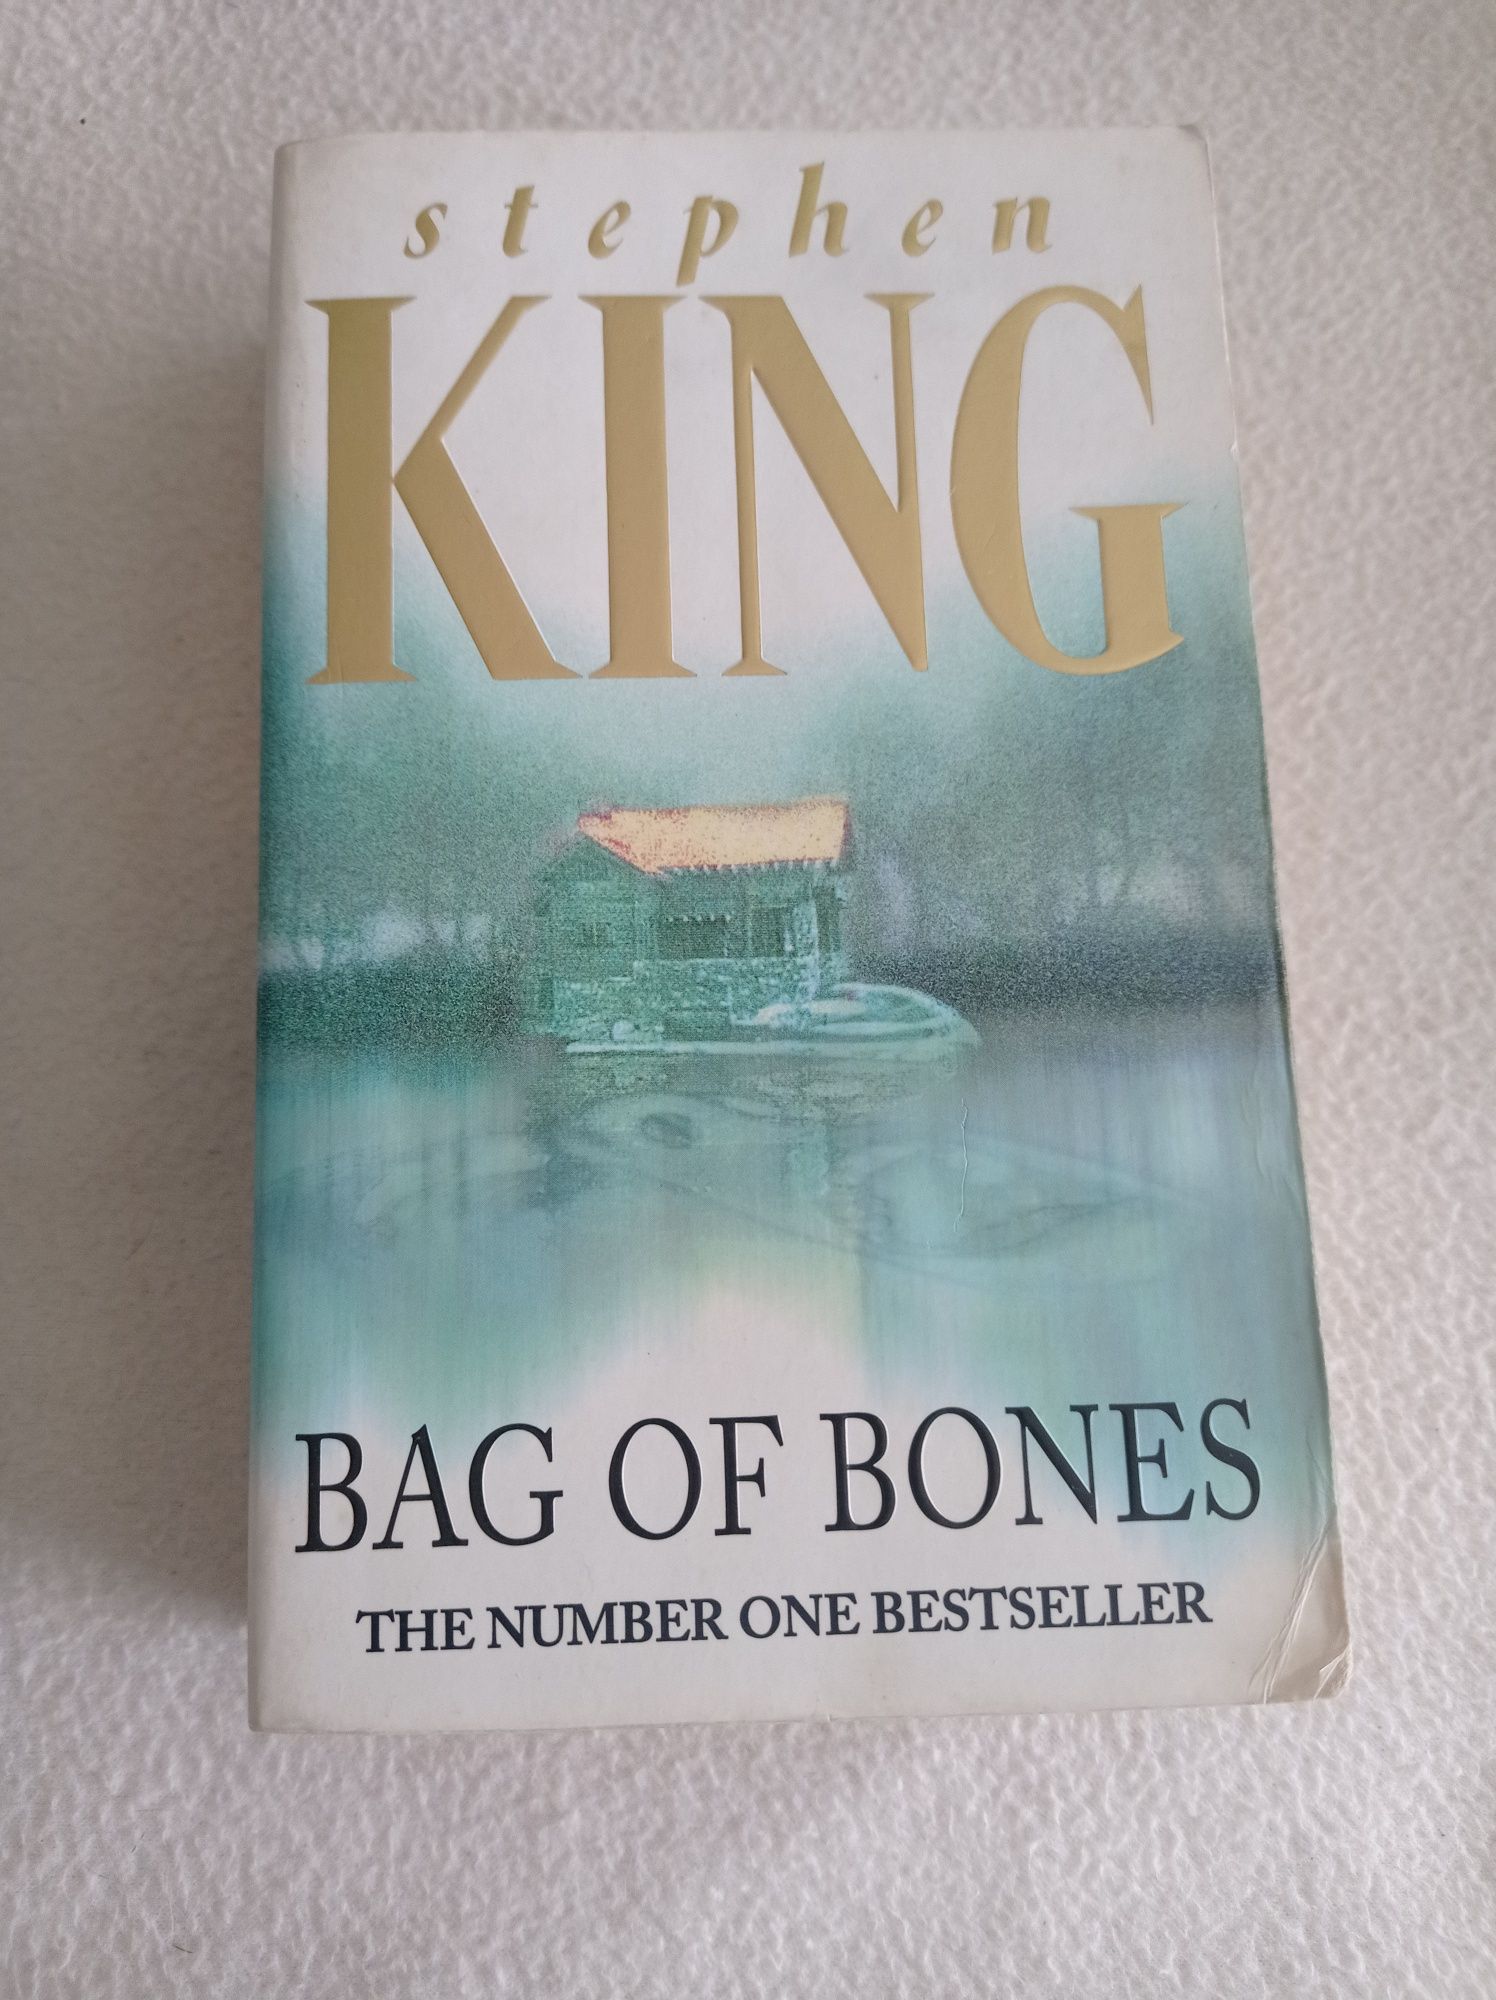 Bag of bones - Stephen King